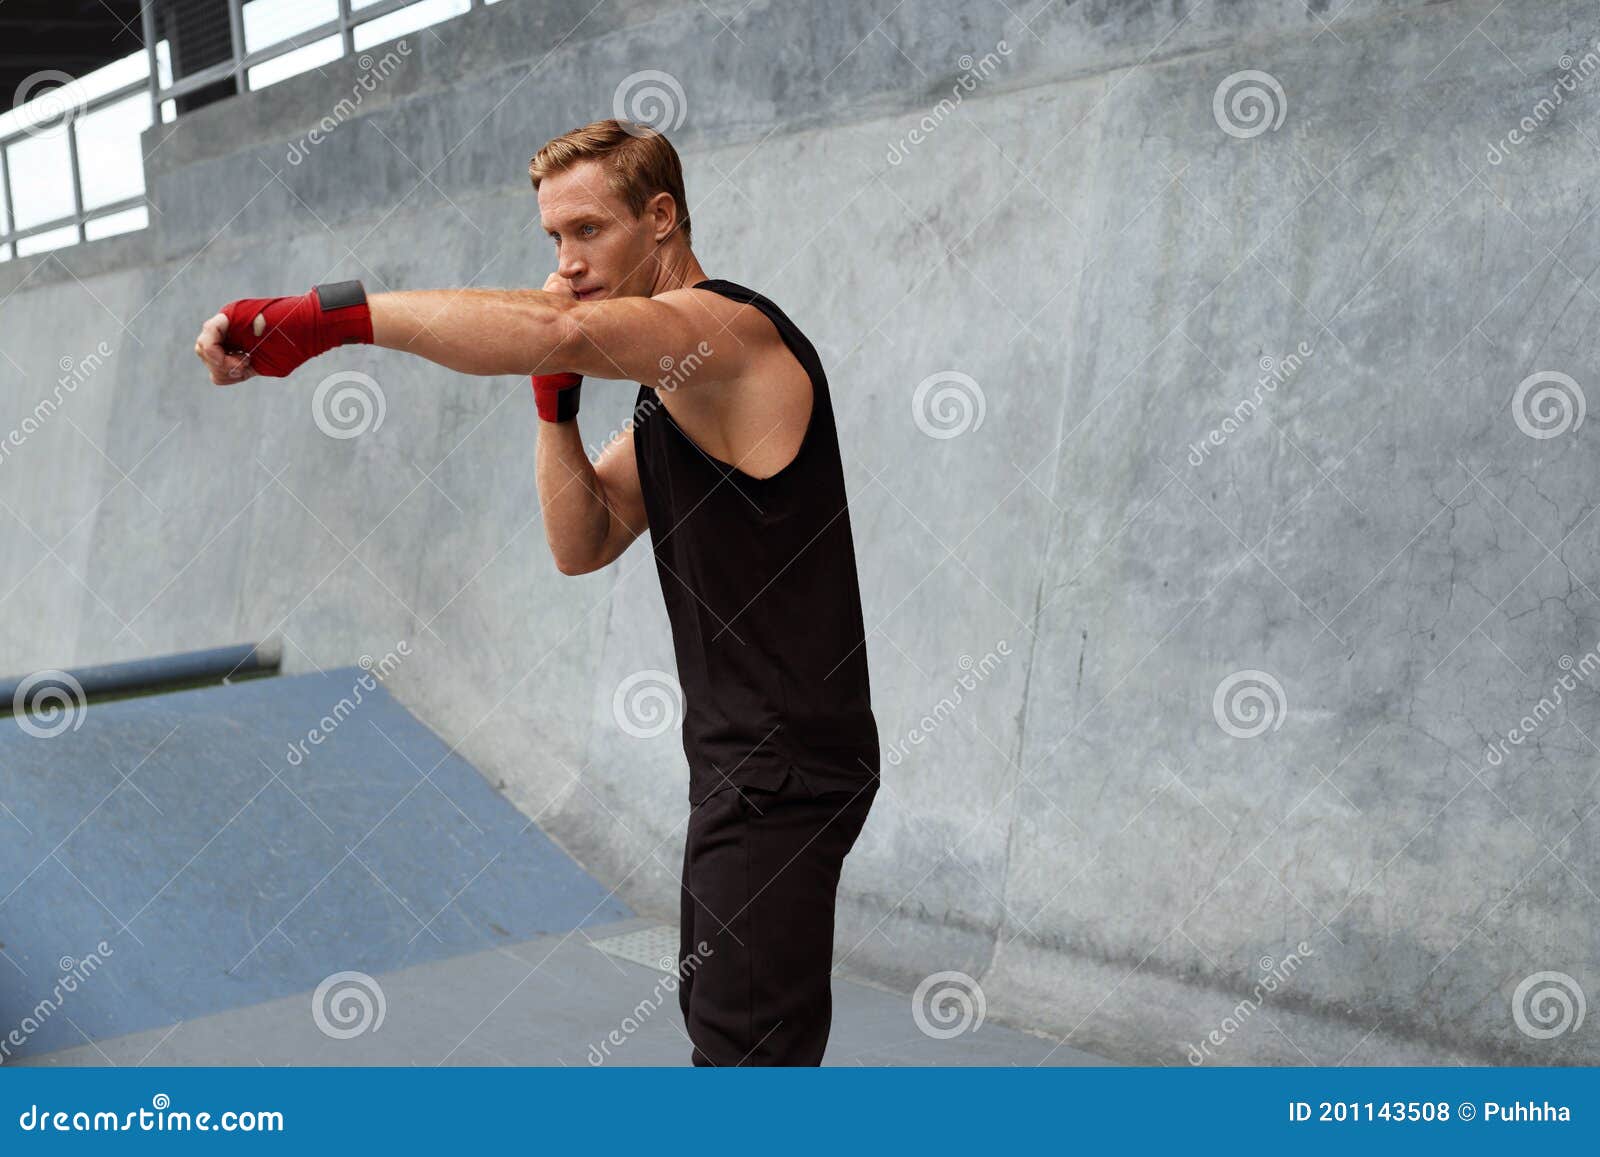 Những tư thế boxing chuyên nghiệp để rèn luyện sức mạnh và sự chắc chắn